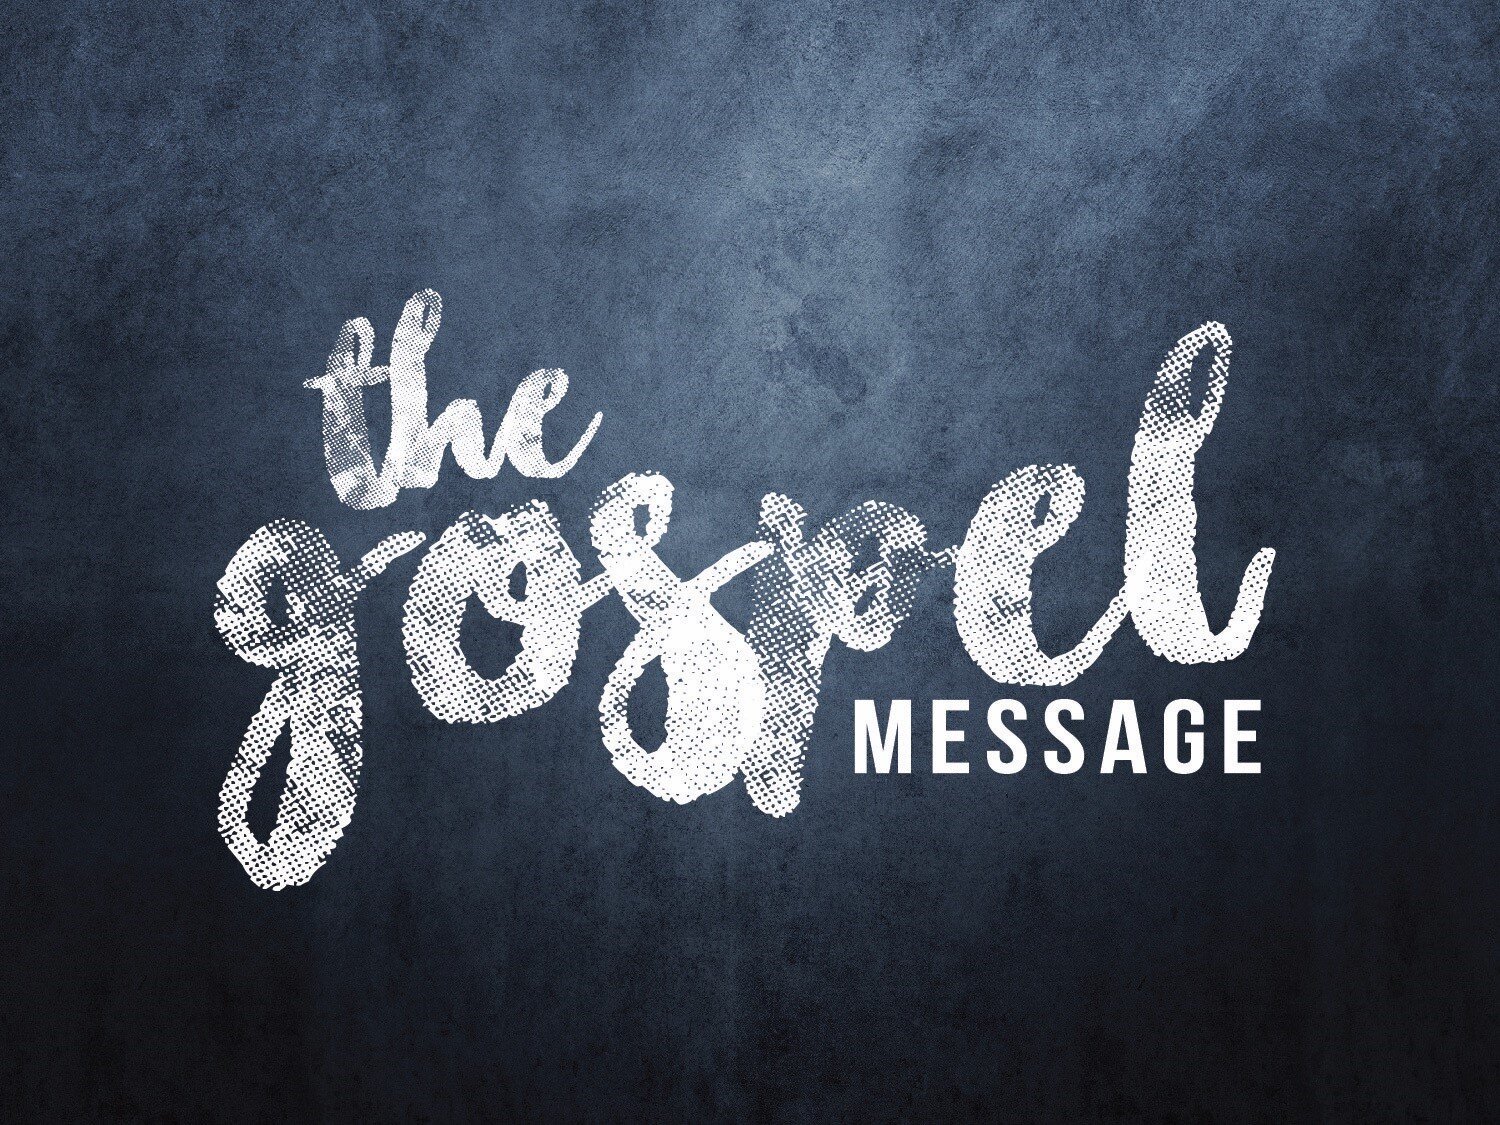 8 Weeks on the Gospel